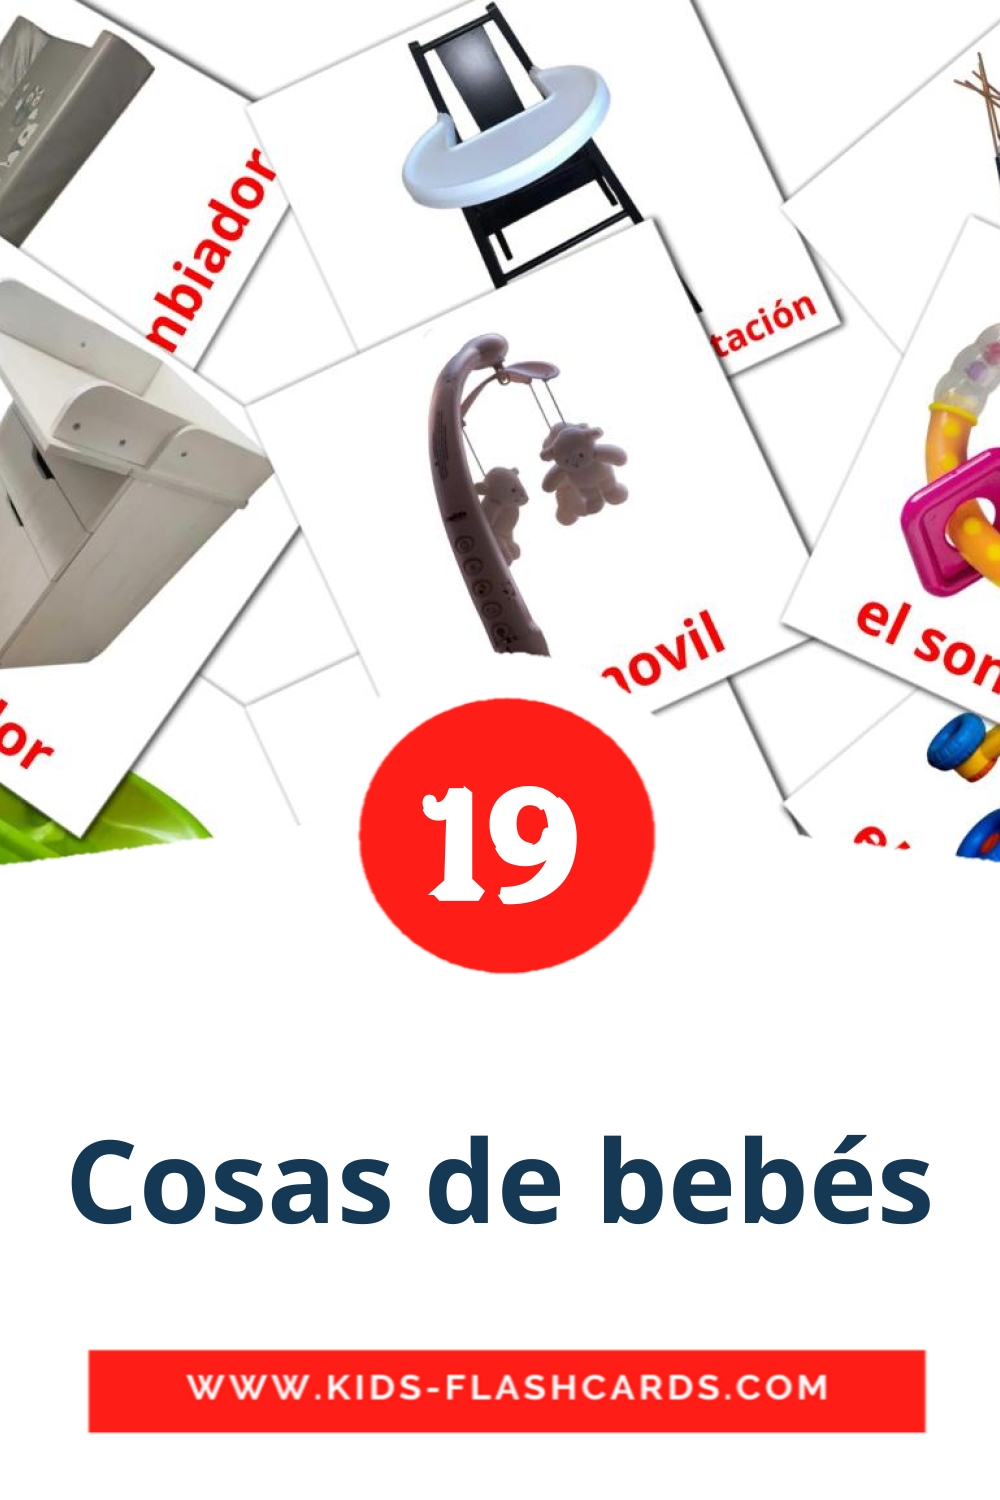 20 Cosas de bebés Picture Cards for Kindergarden in spanish